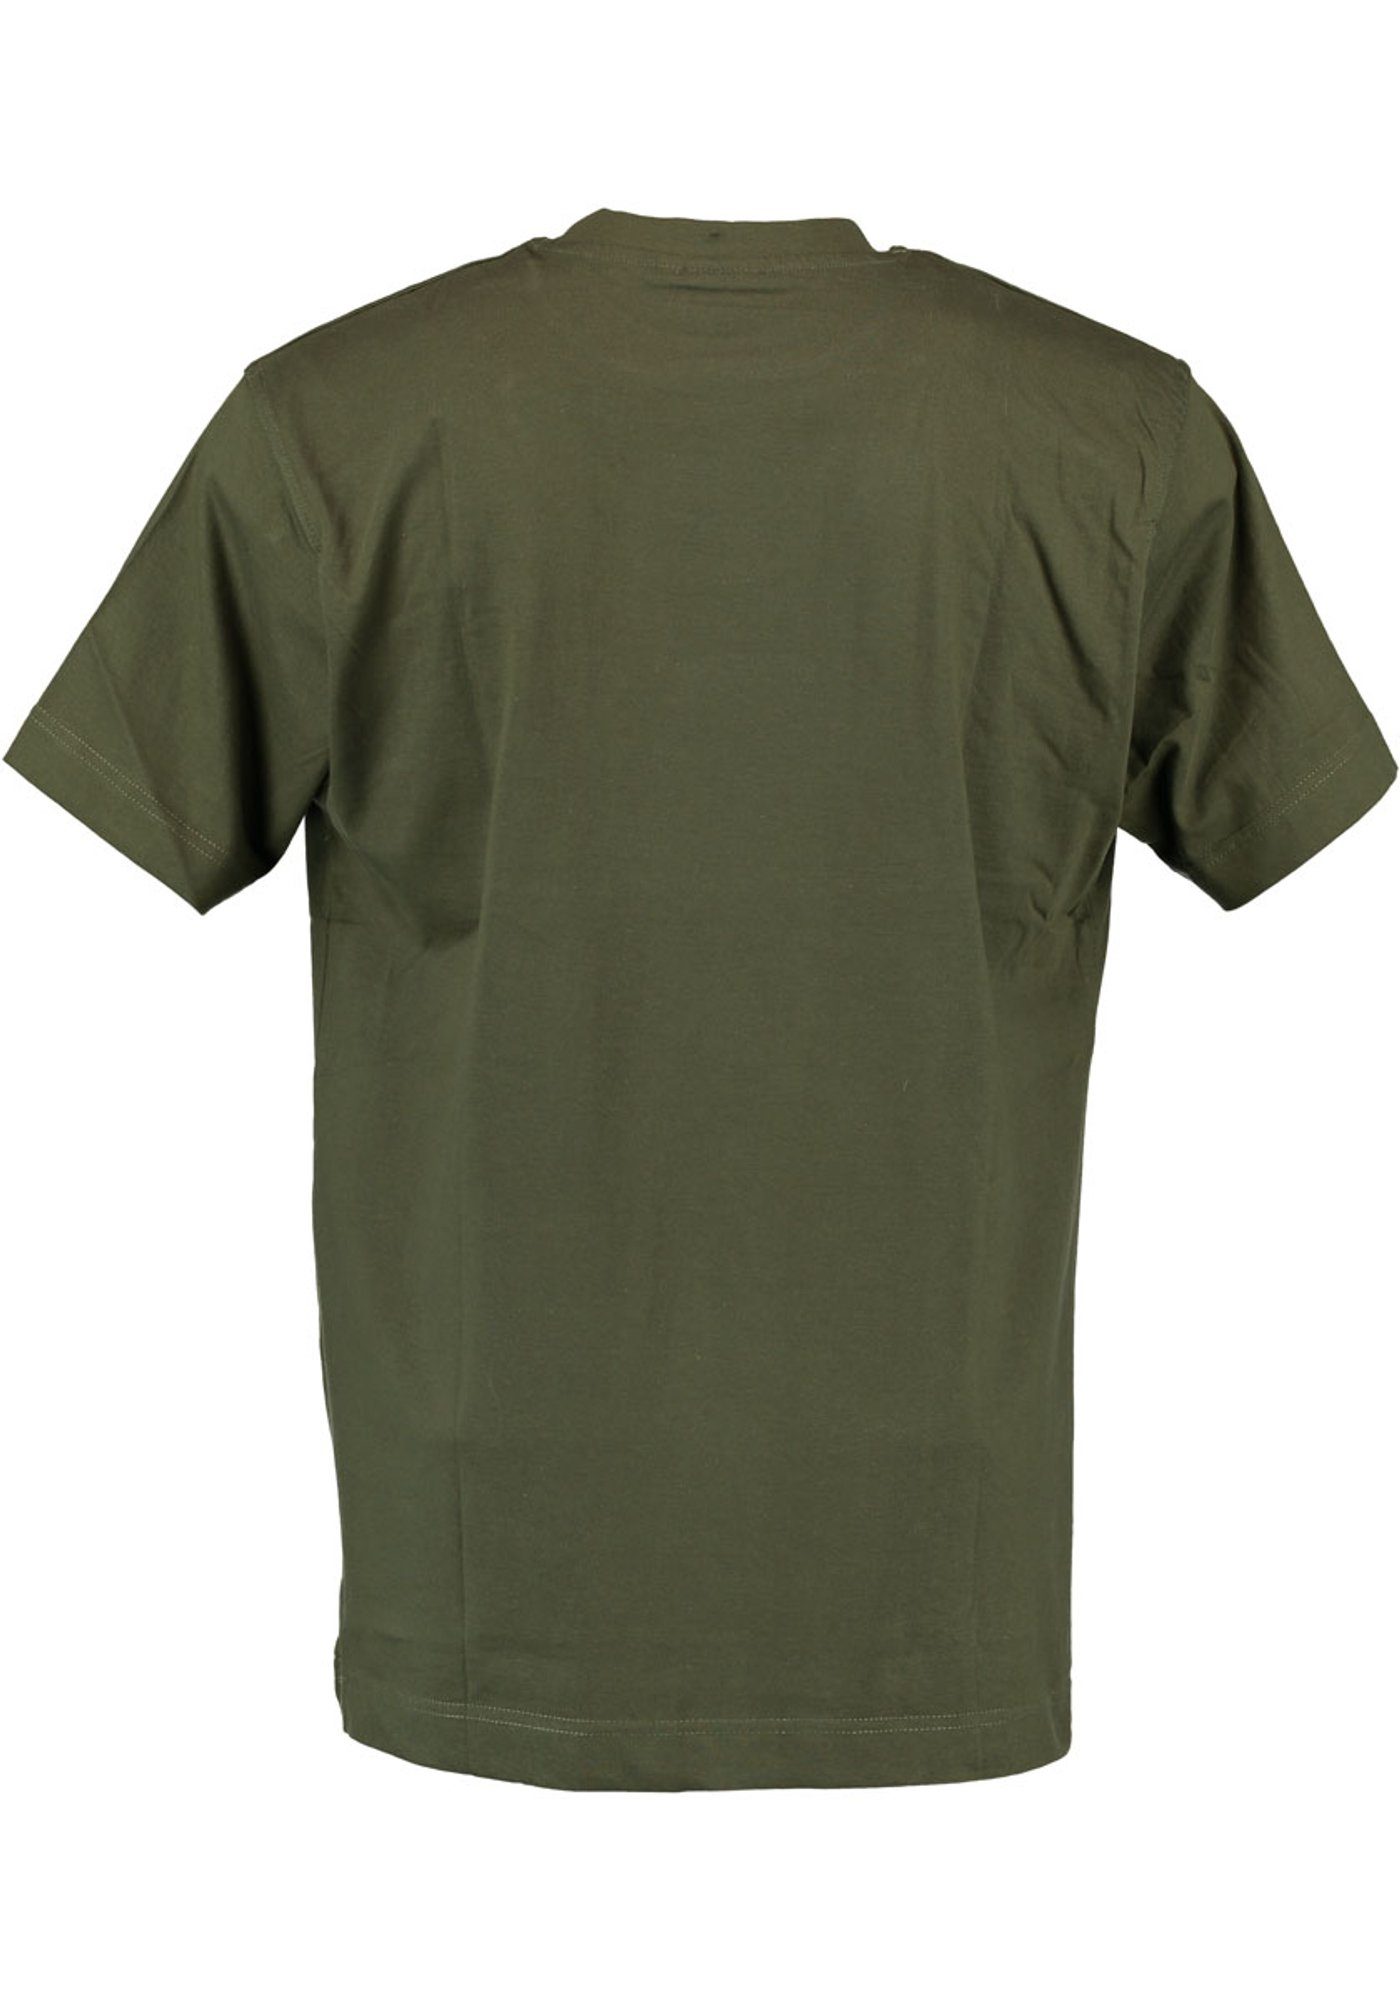 Hirsch-Stickerei OS-Trachten Brusttasche auf Najio T-Shirt oliv mit Kurzarmshirt Herren der